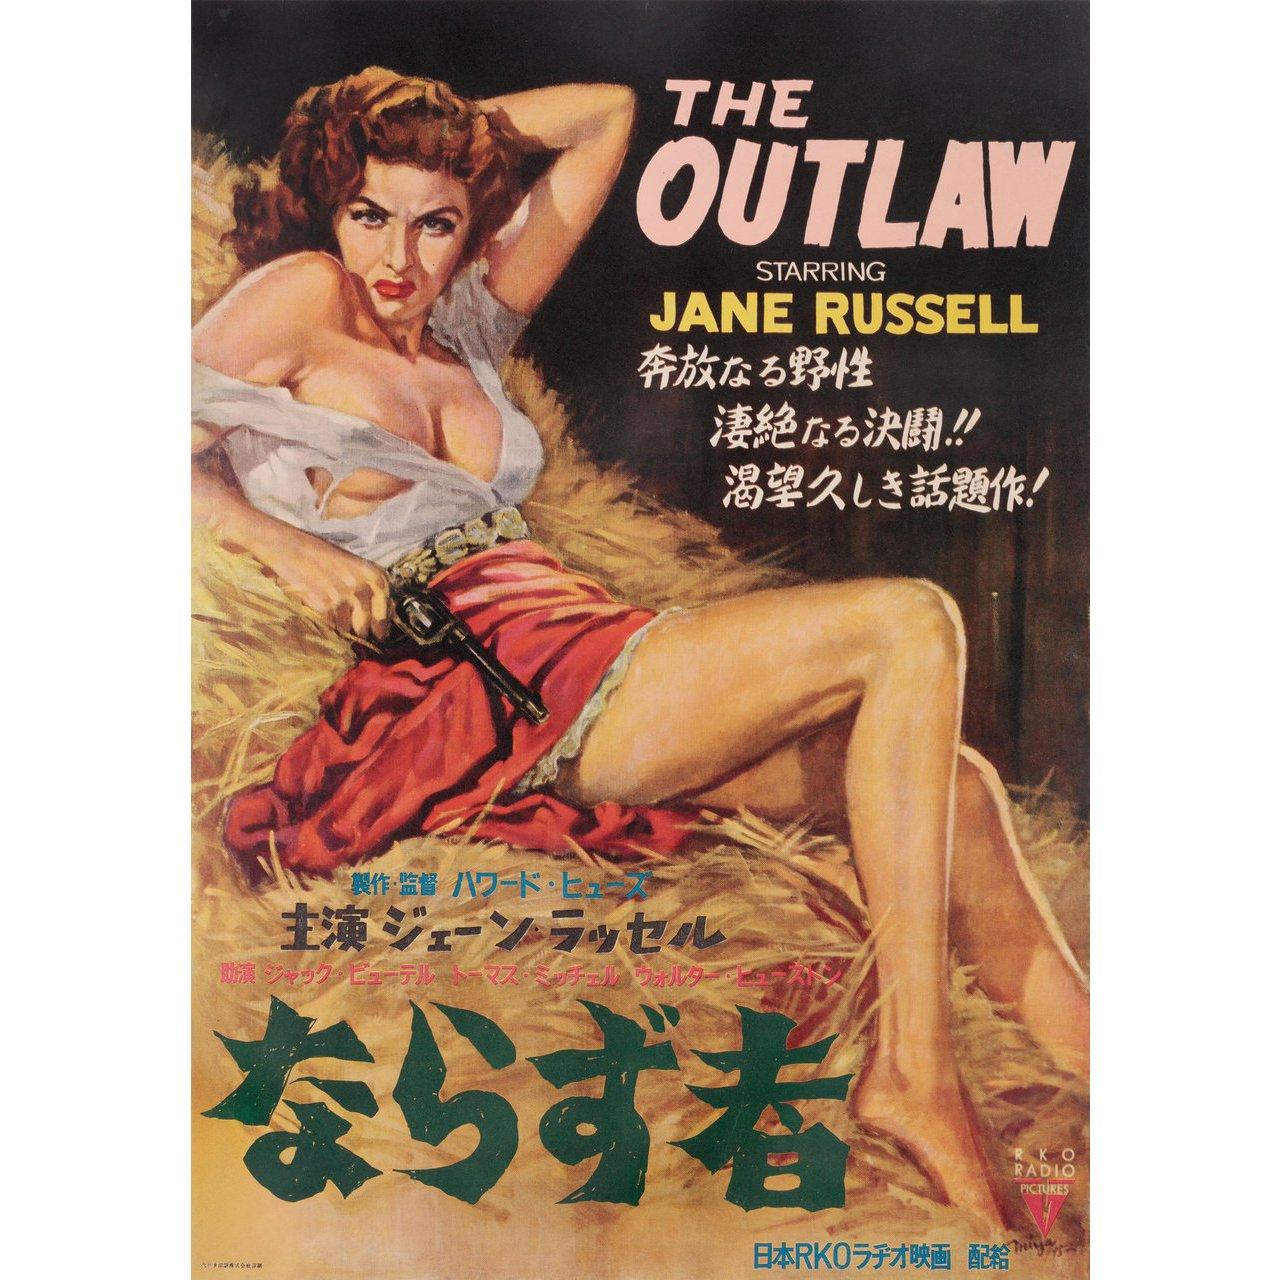 Affiche originale japonaise B2 de 1952 pour la première sortie en salle au Japon du film The Outlaw de 1943 réalisé par Howard Hughes / Howard Hawks avec Jack Buetel / Jane Russell / Thomas Mitchell / Walter Huston. En bon état, avec un dos en lin.